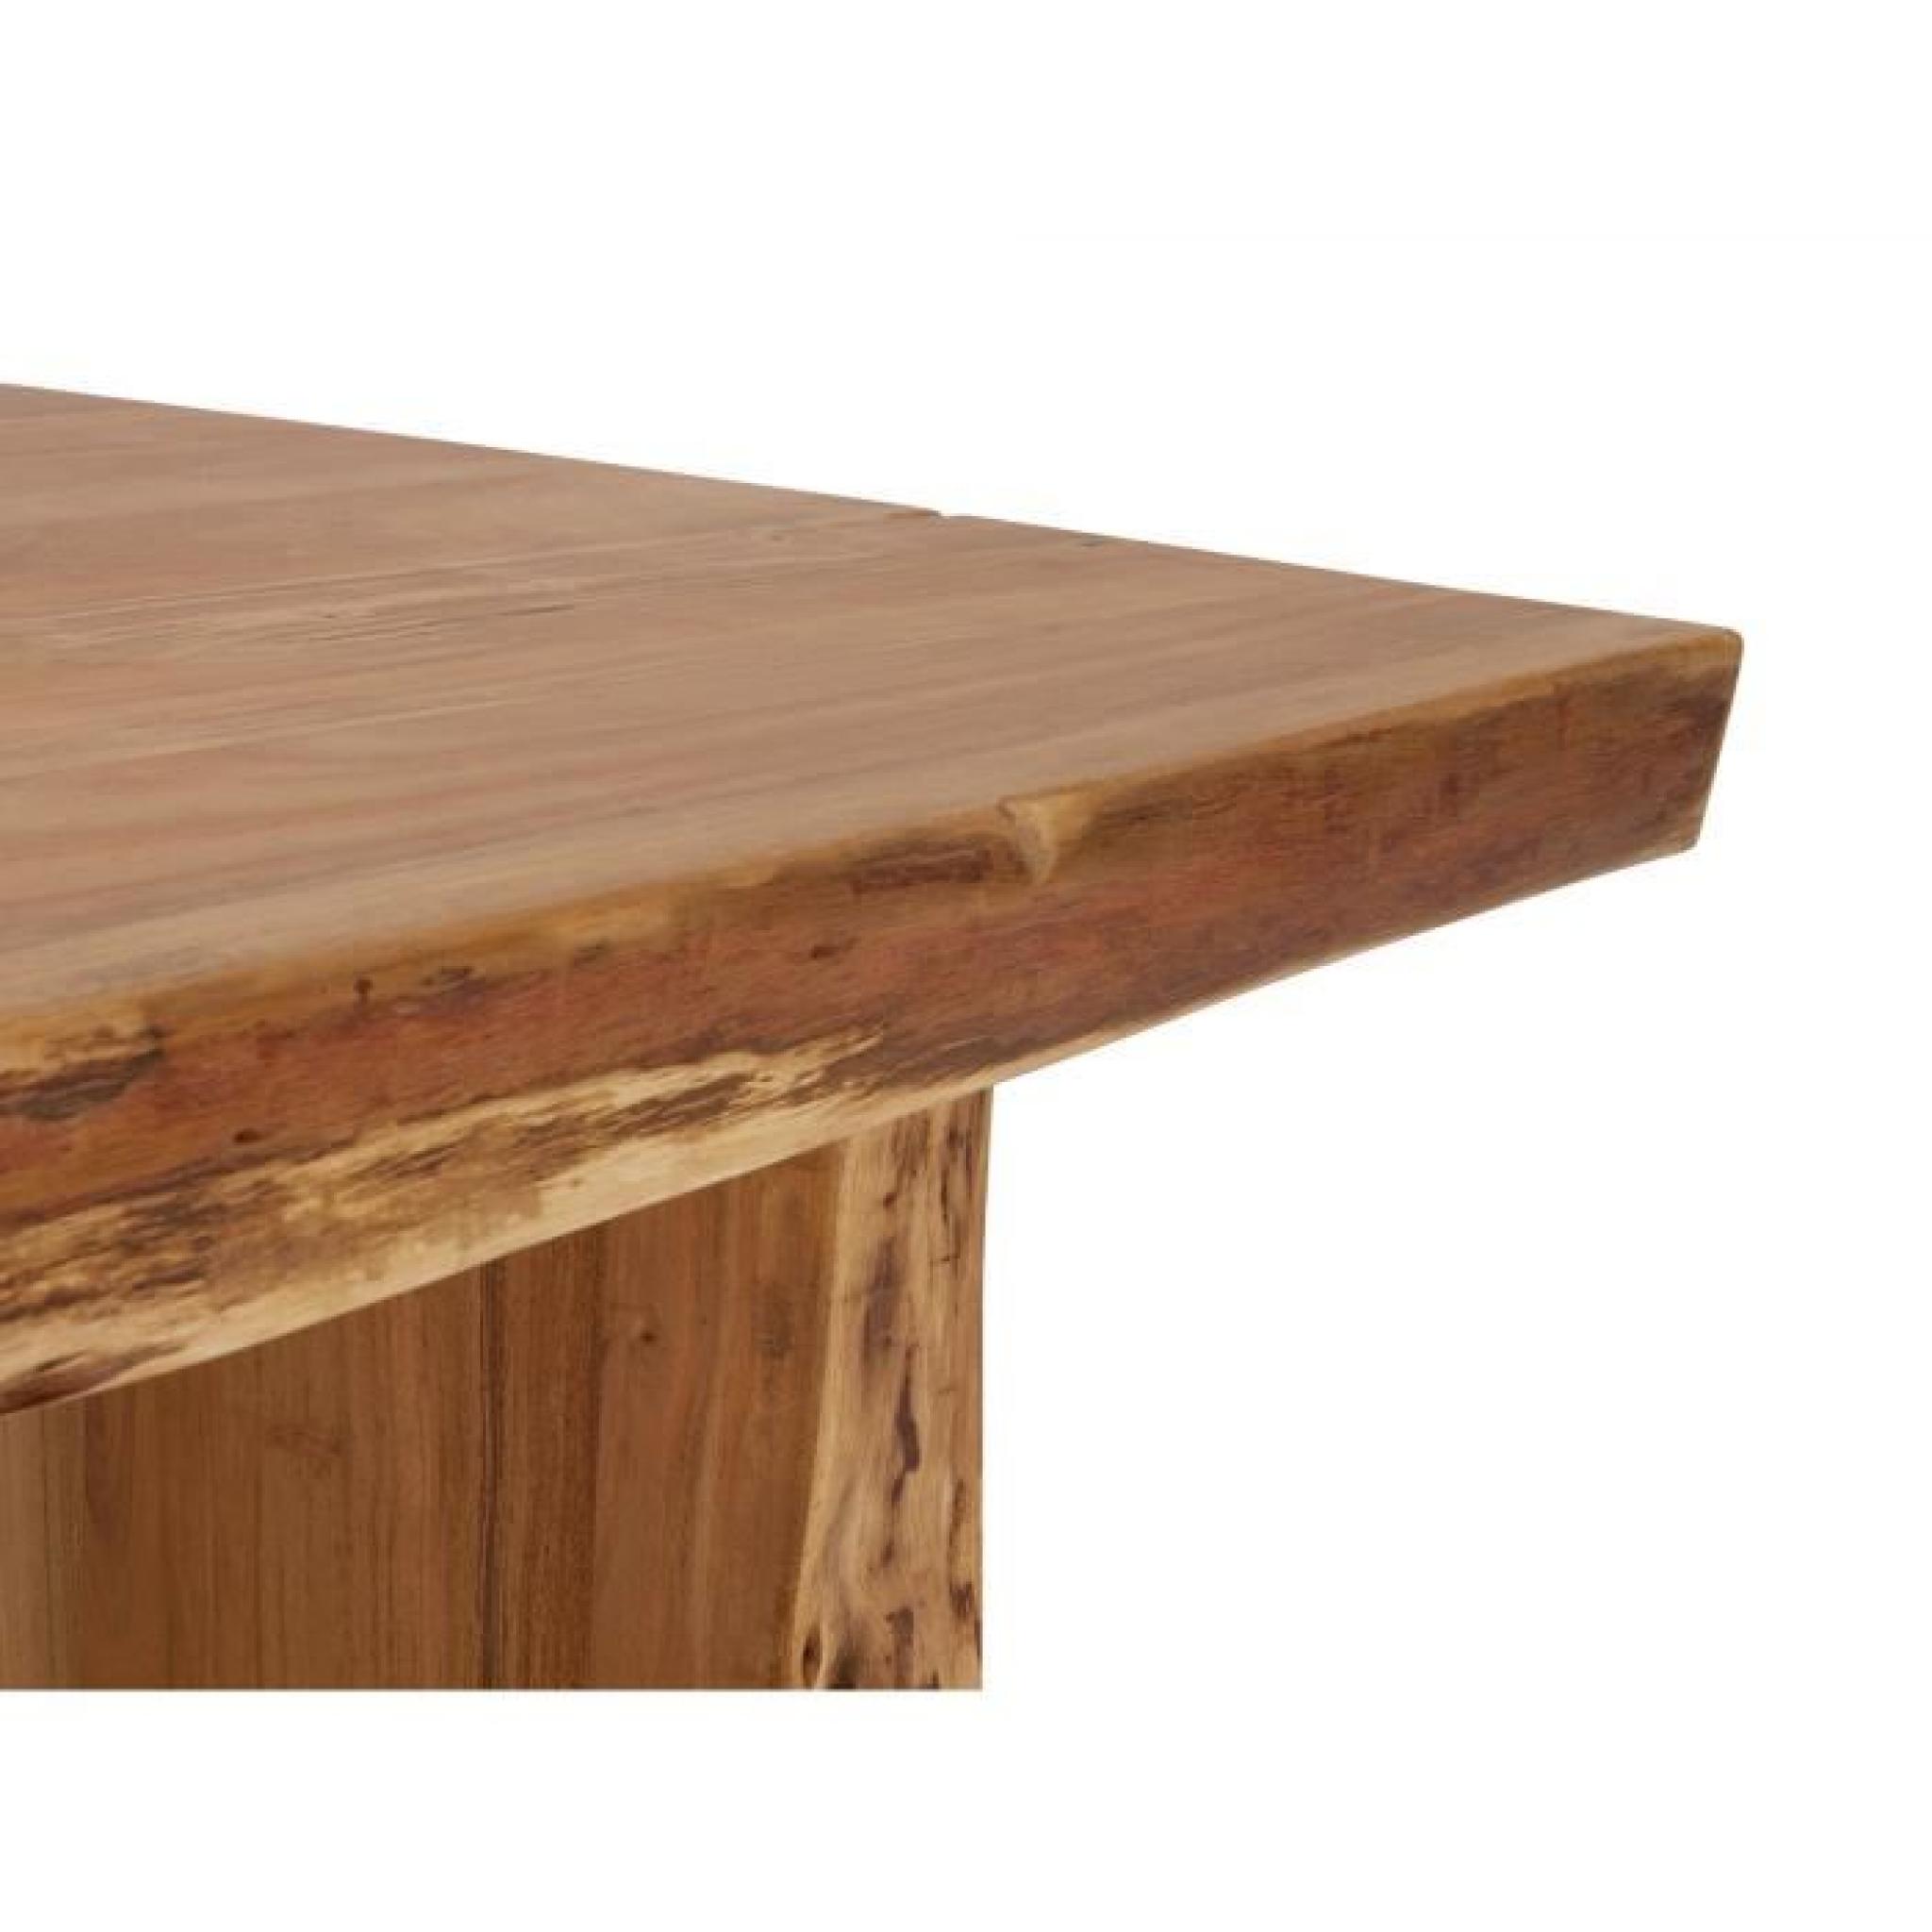 Table basse CANYON 120x70 en acacia laqué naturel massivum pas cher